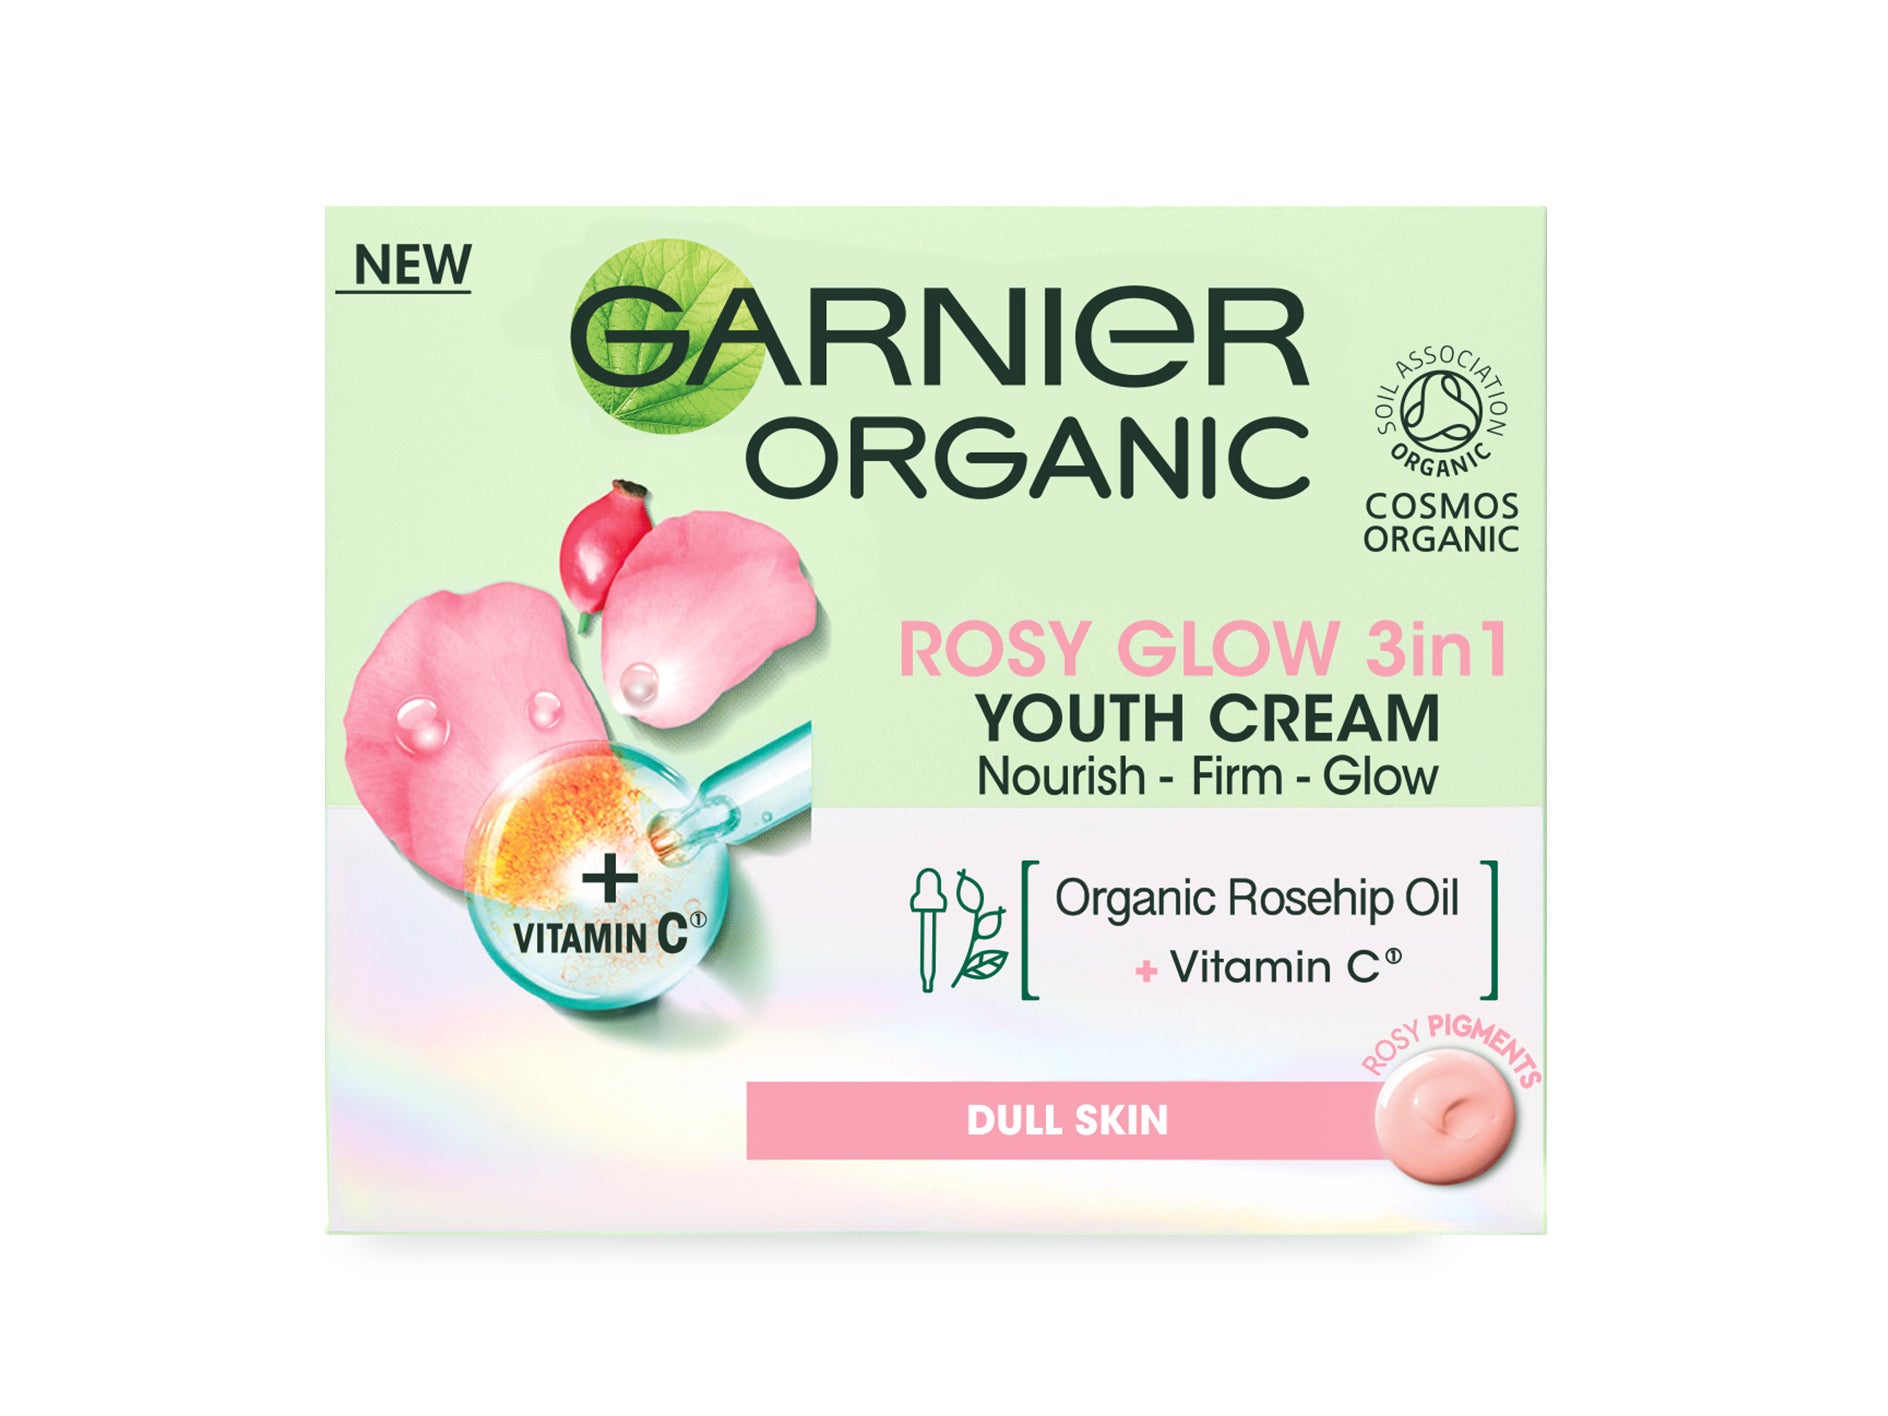 Garnier Organic rosy glow 3 in 1 youth cream.jpg